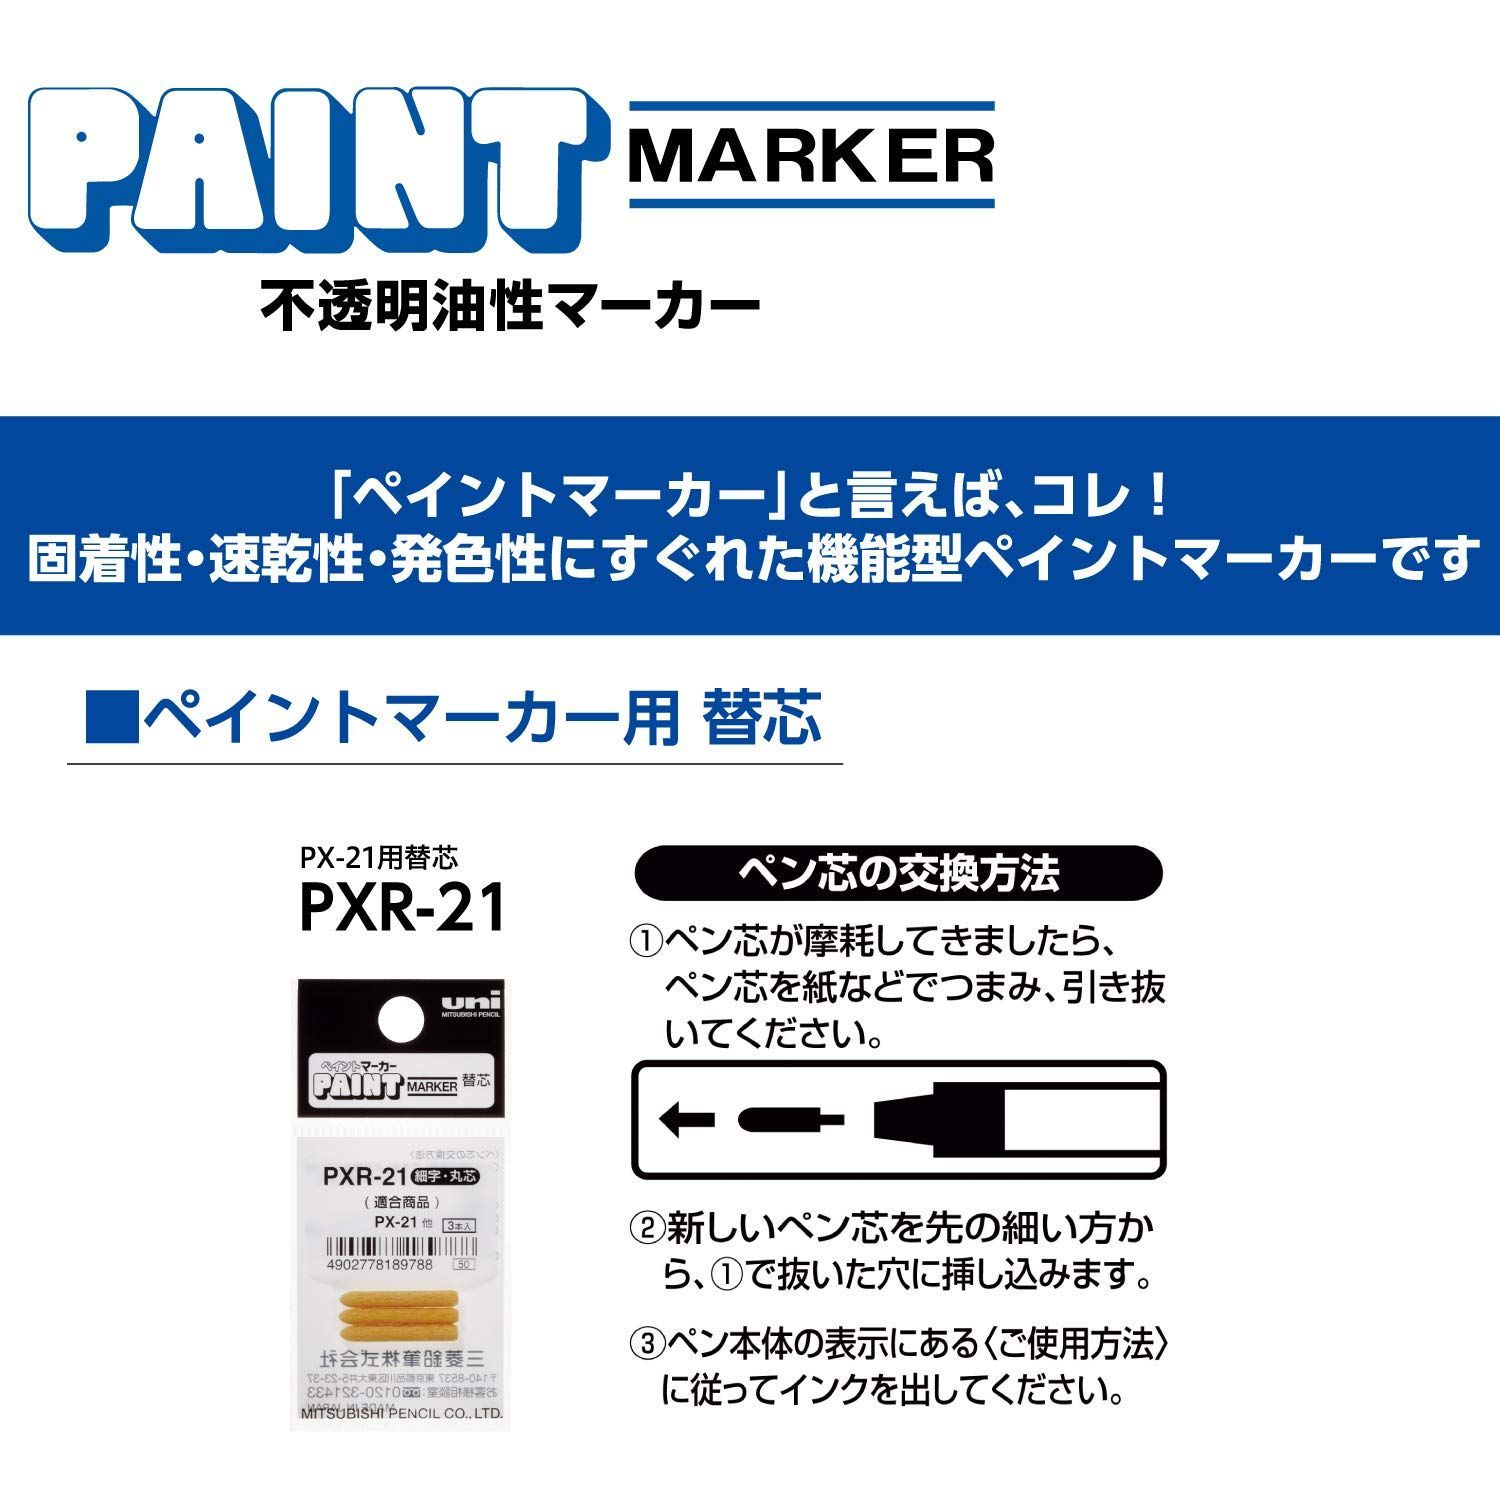 三菱鉛筆 ペイントマーカー 細字 青 10本 PX21.33 - 筆記用具